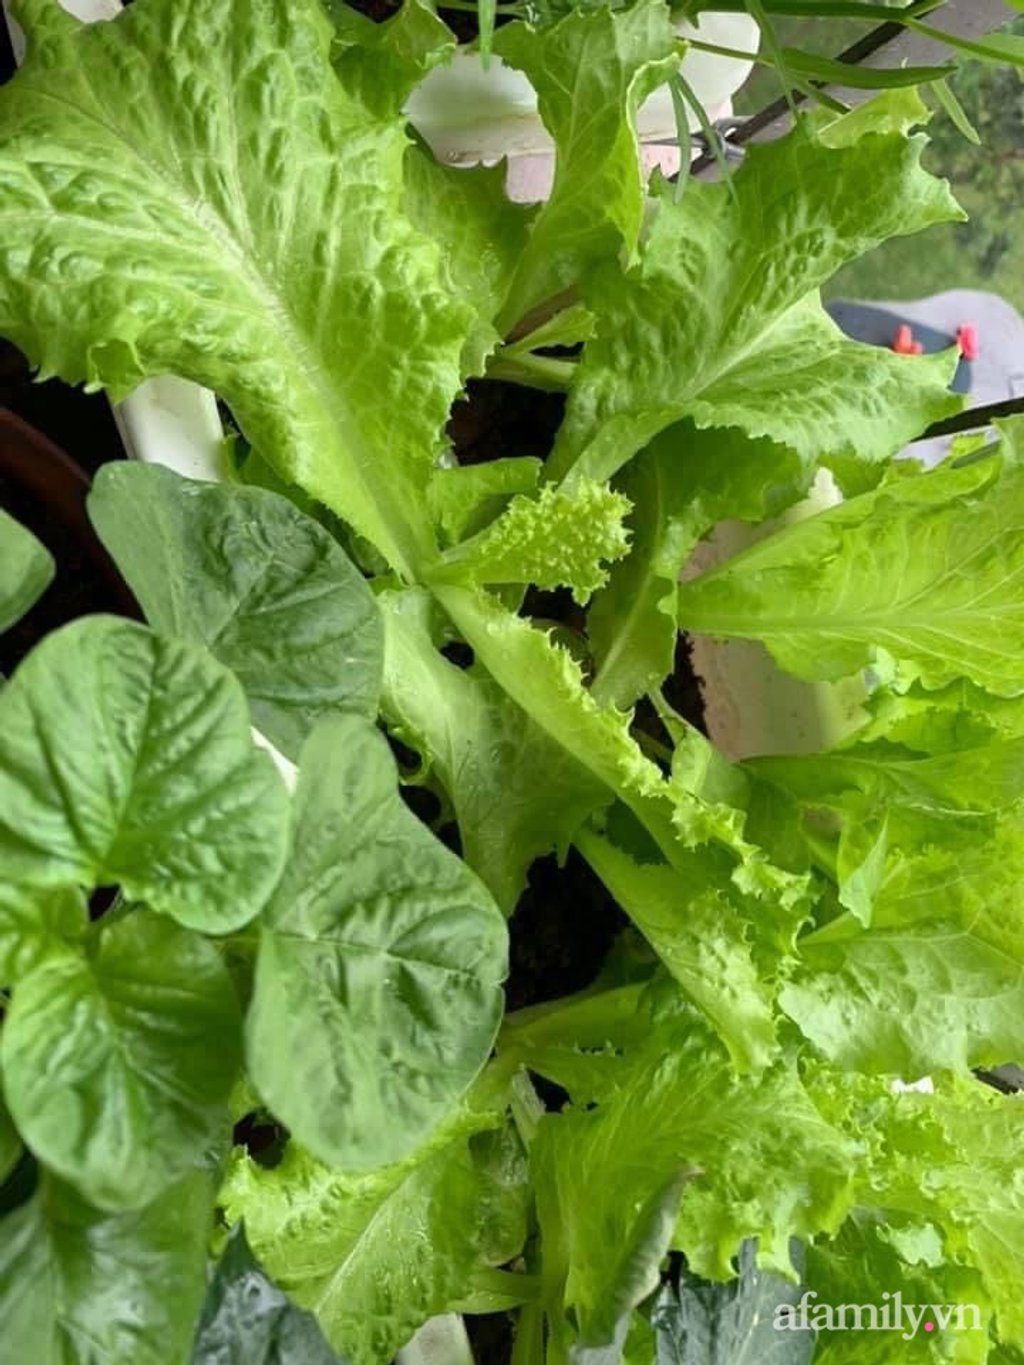 Chị trồng thêm các loại cải phù hợp với thời tiết thu đông, xà lách, các loại rau gia vị...